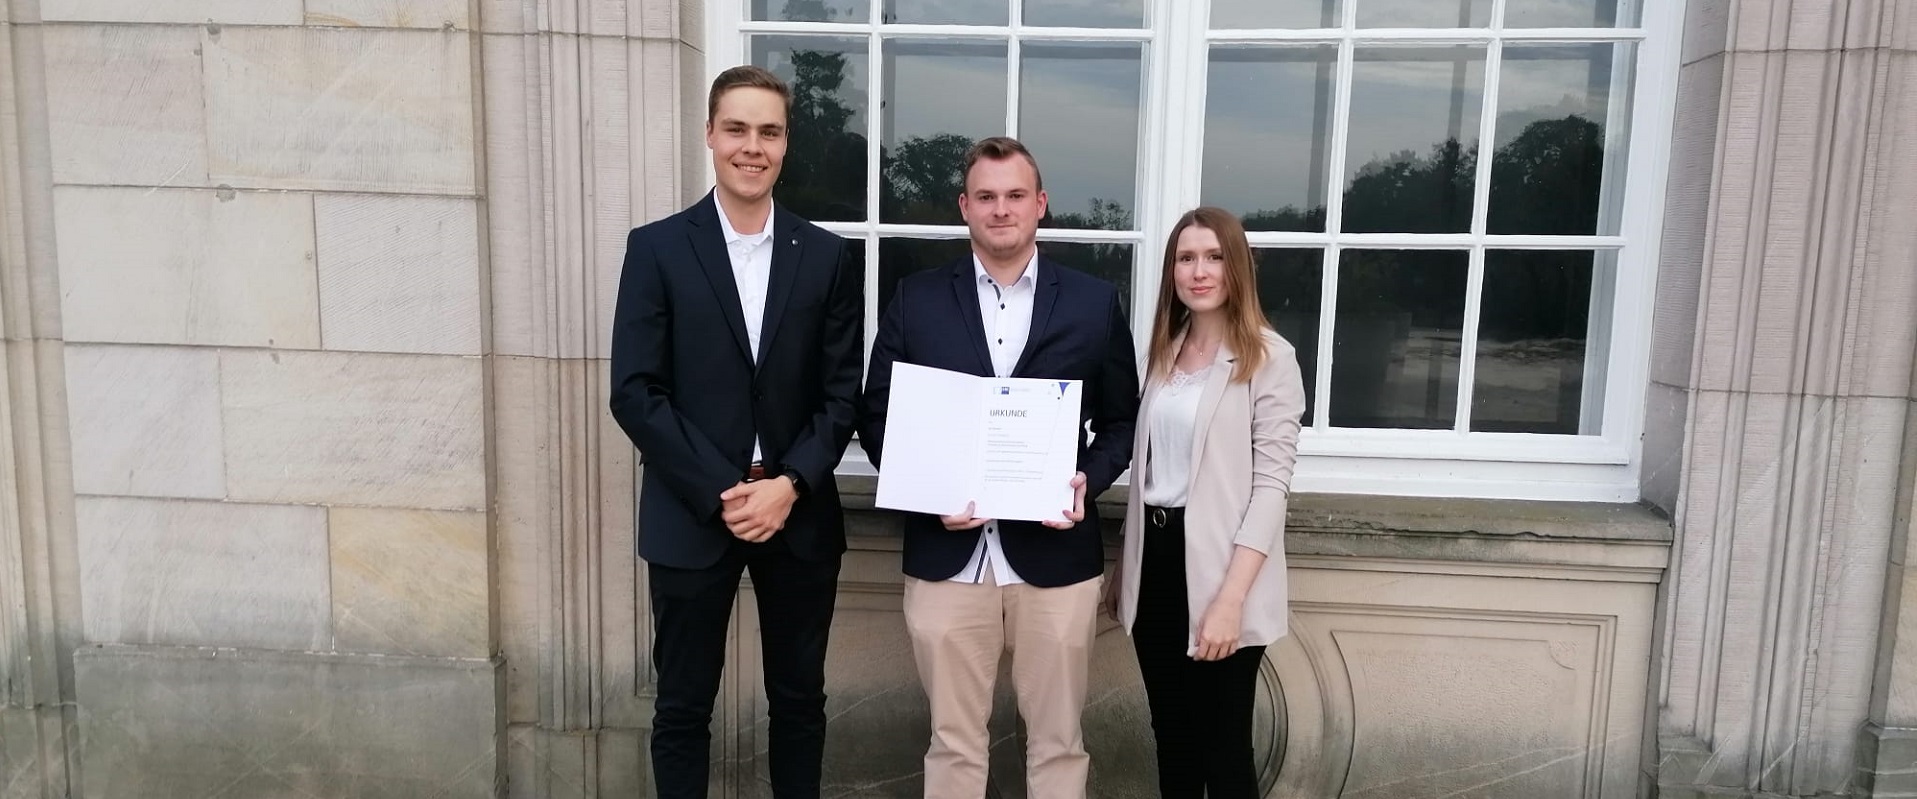 Jan Schröder (Mitte) zeigt stolz seine Urkunde. Mit ihm freuen sich Florian Stöver (Ausbilder) und Maureen Strobl (Ausbildungsleitung).